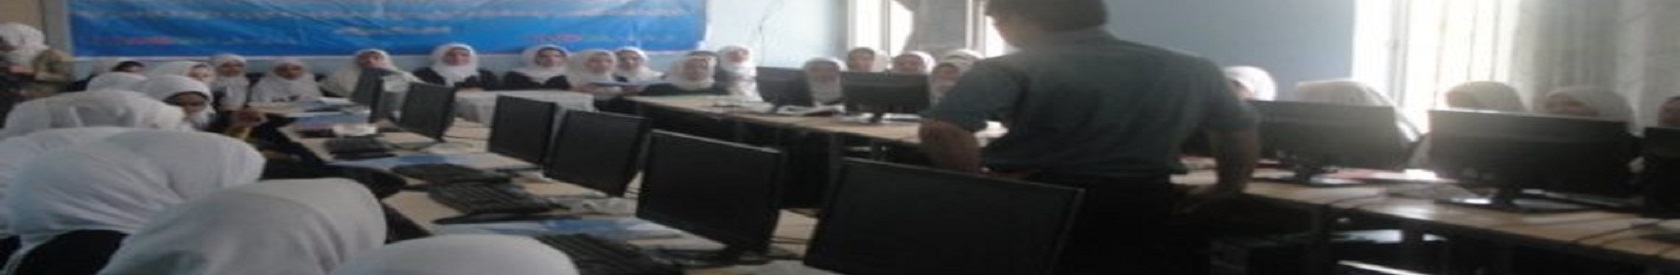 Legal training program in Mawlana Hatefi High School